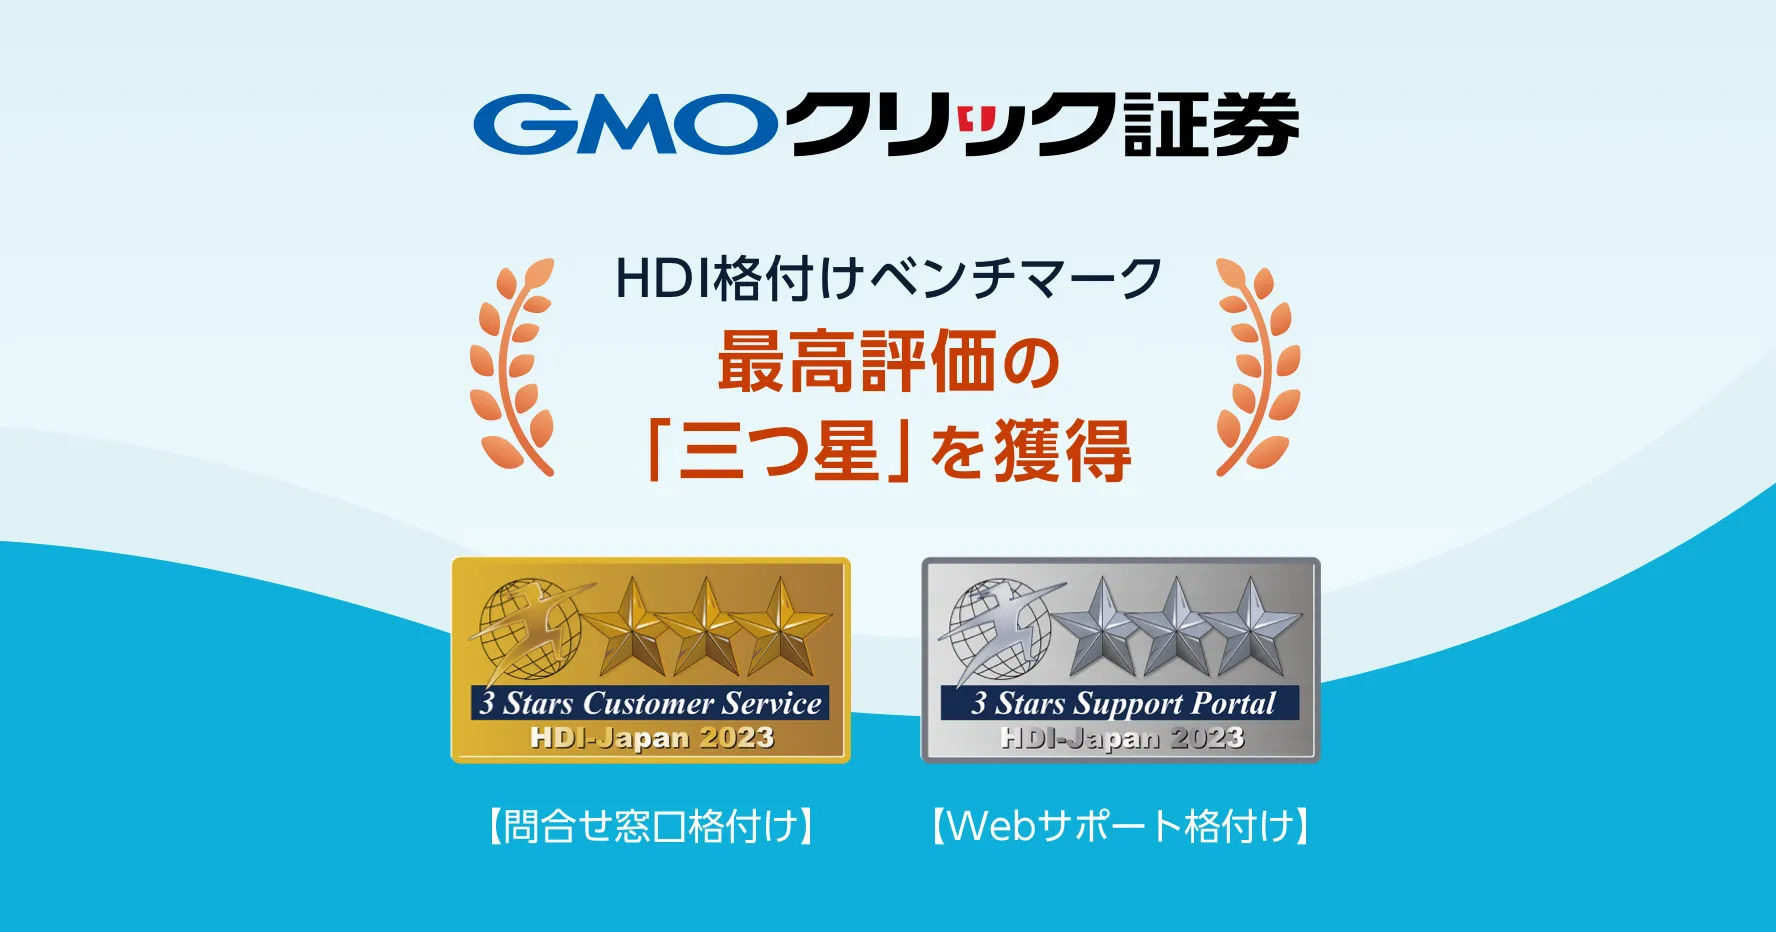 GMOクリック証券 HDI格付けベンチマーク最高評価の「三つ星」を獲得